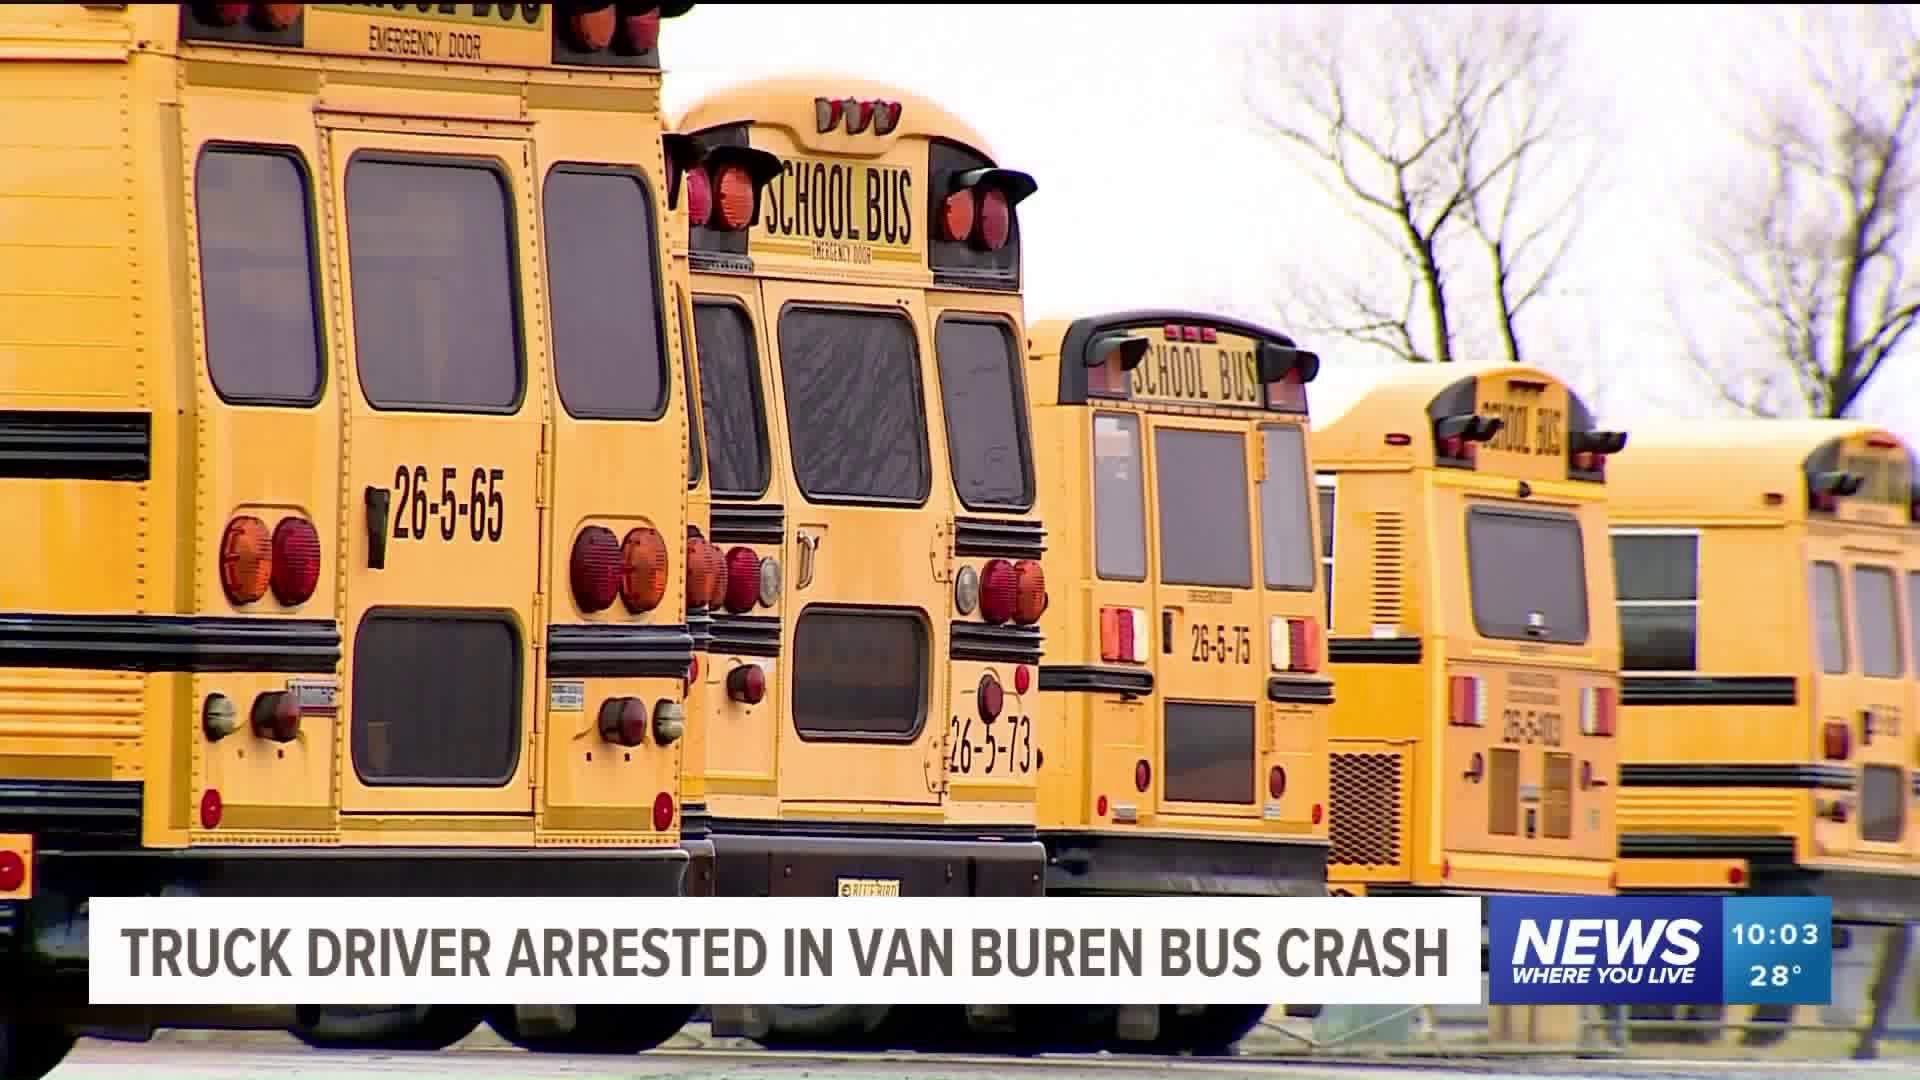 Truck Driver Arrested in Van Buren Bus Crash